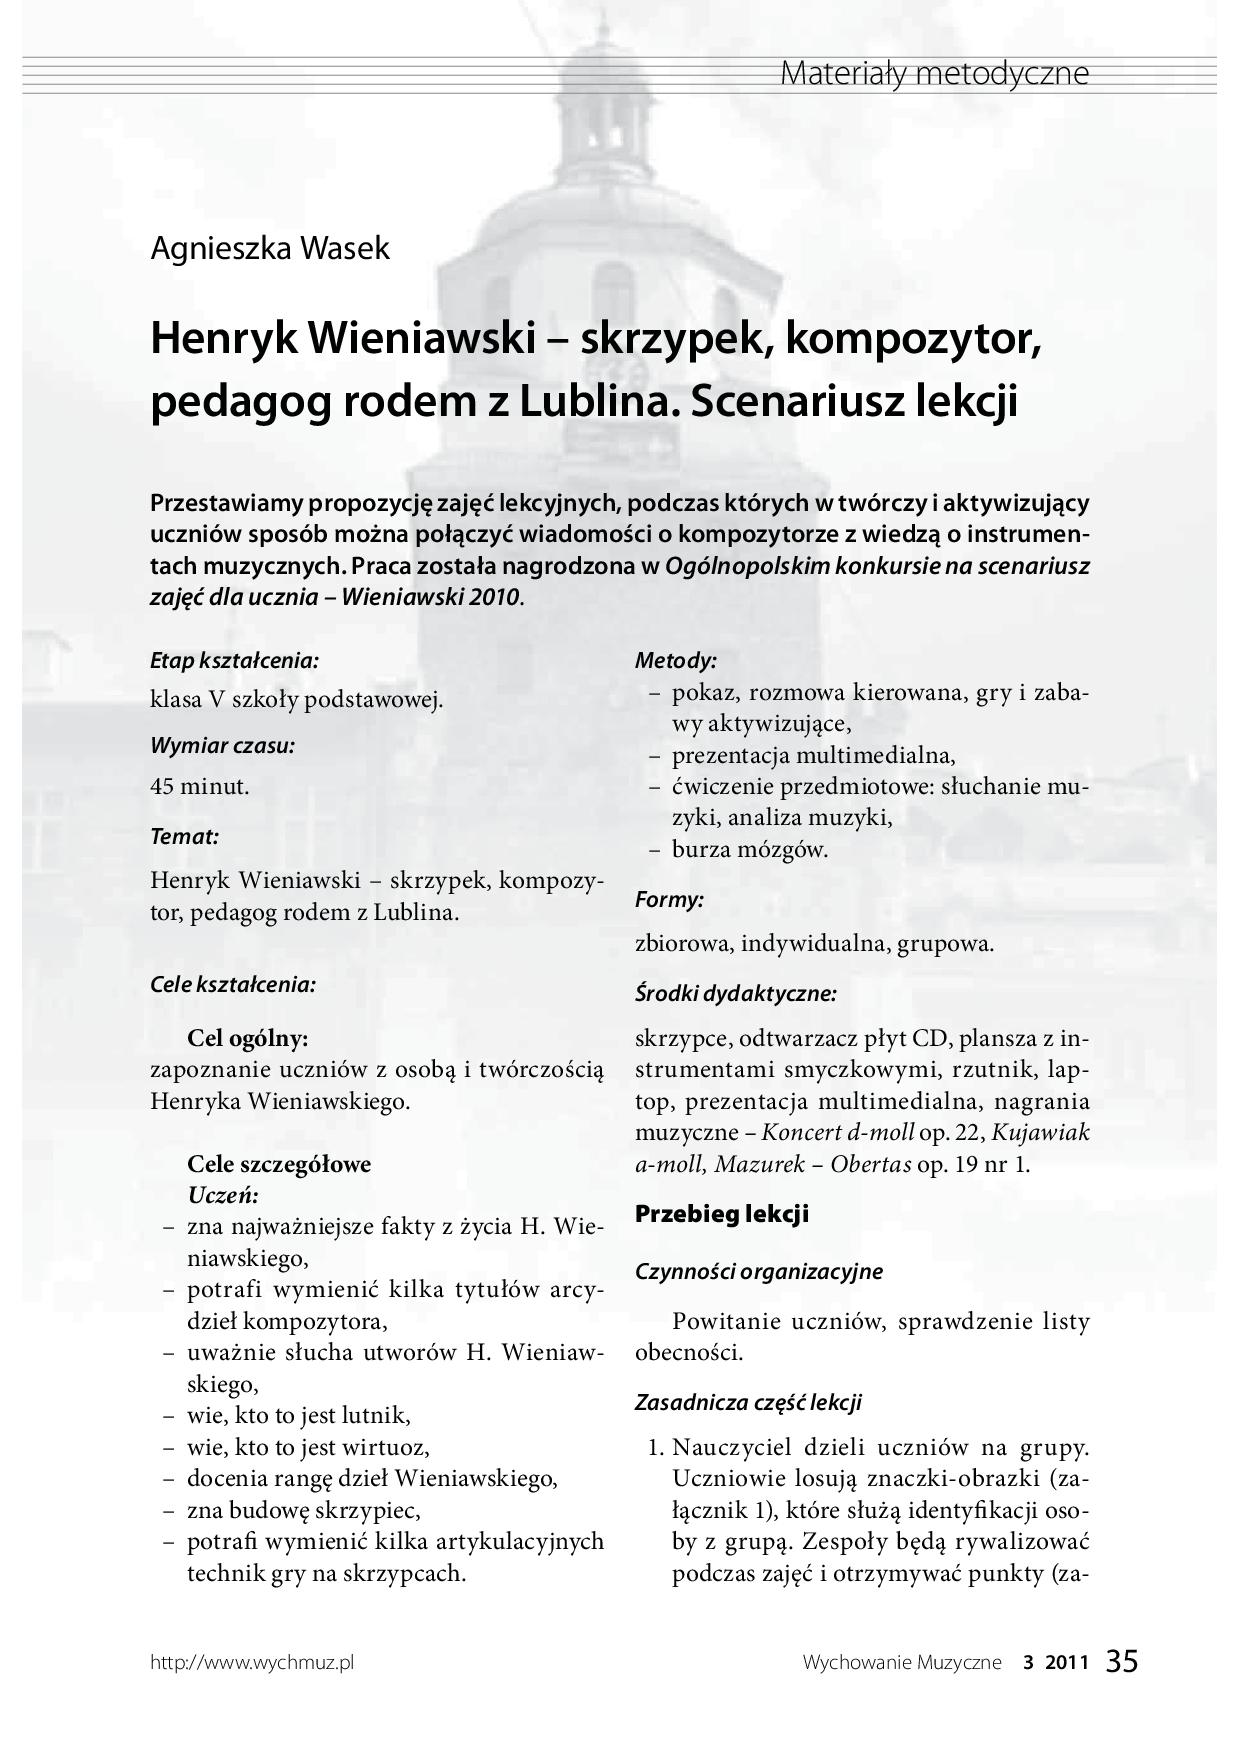 Henryk Wieniawski – skrzypek, kompozytor, pedagog rodem z Lublina. Scenariusz lekcji